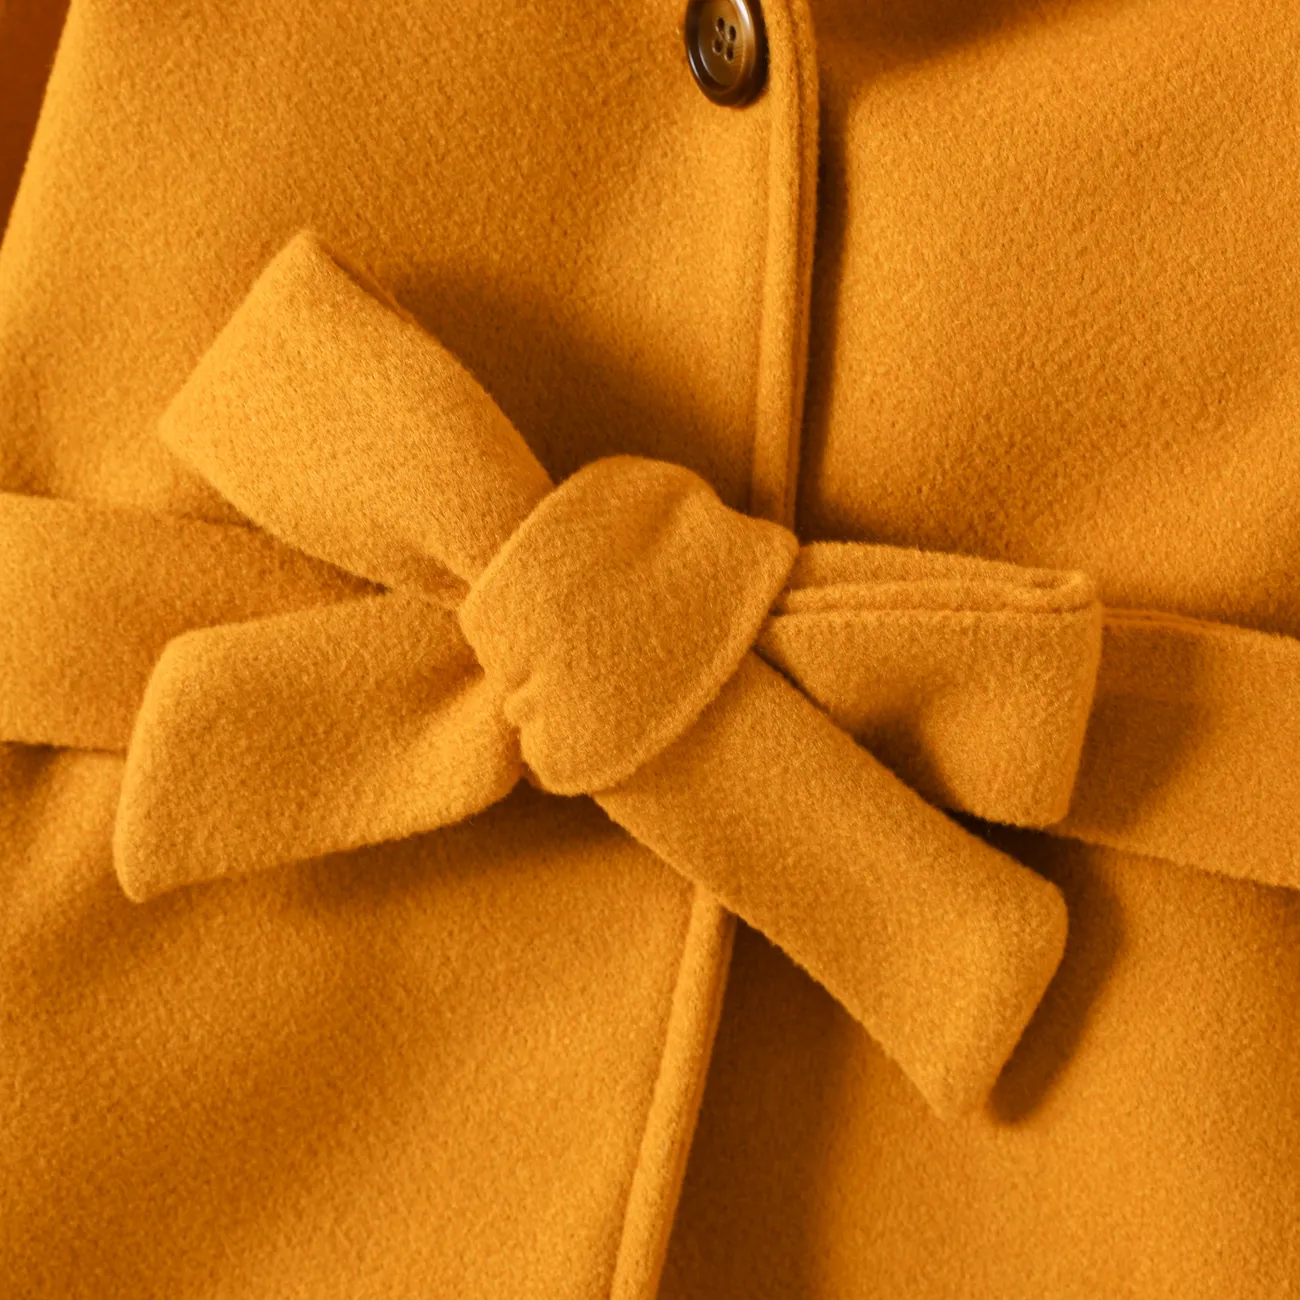 casaco com capuz de pele sintética elegante para menina/menino infantil Castanho big image 1